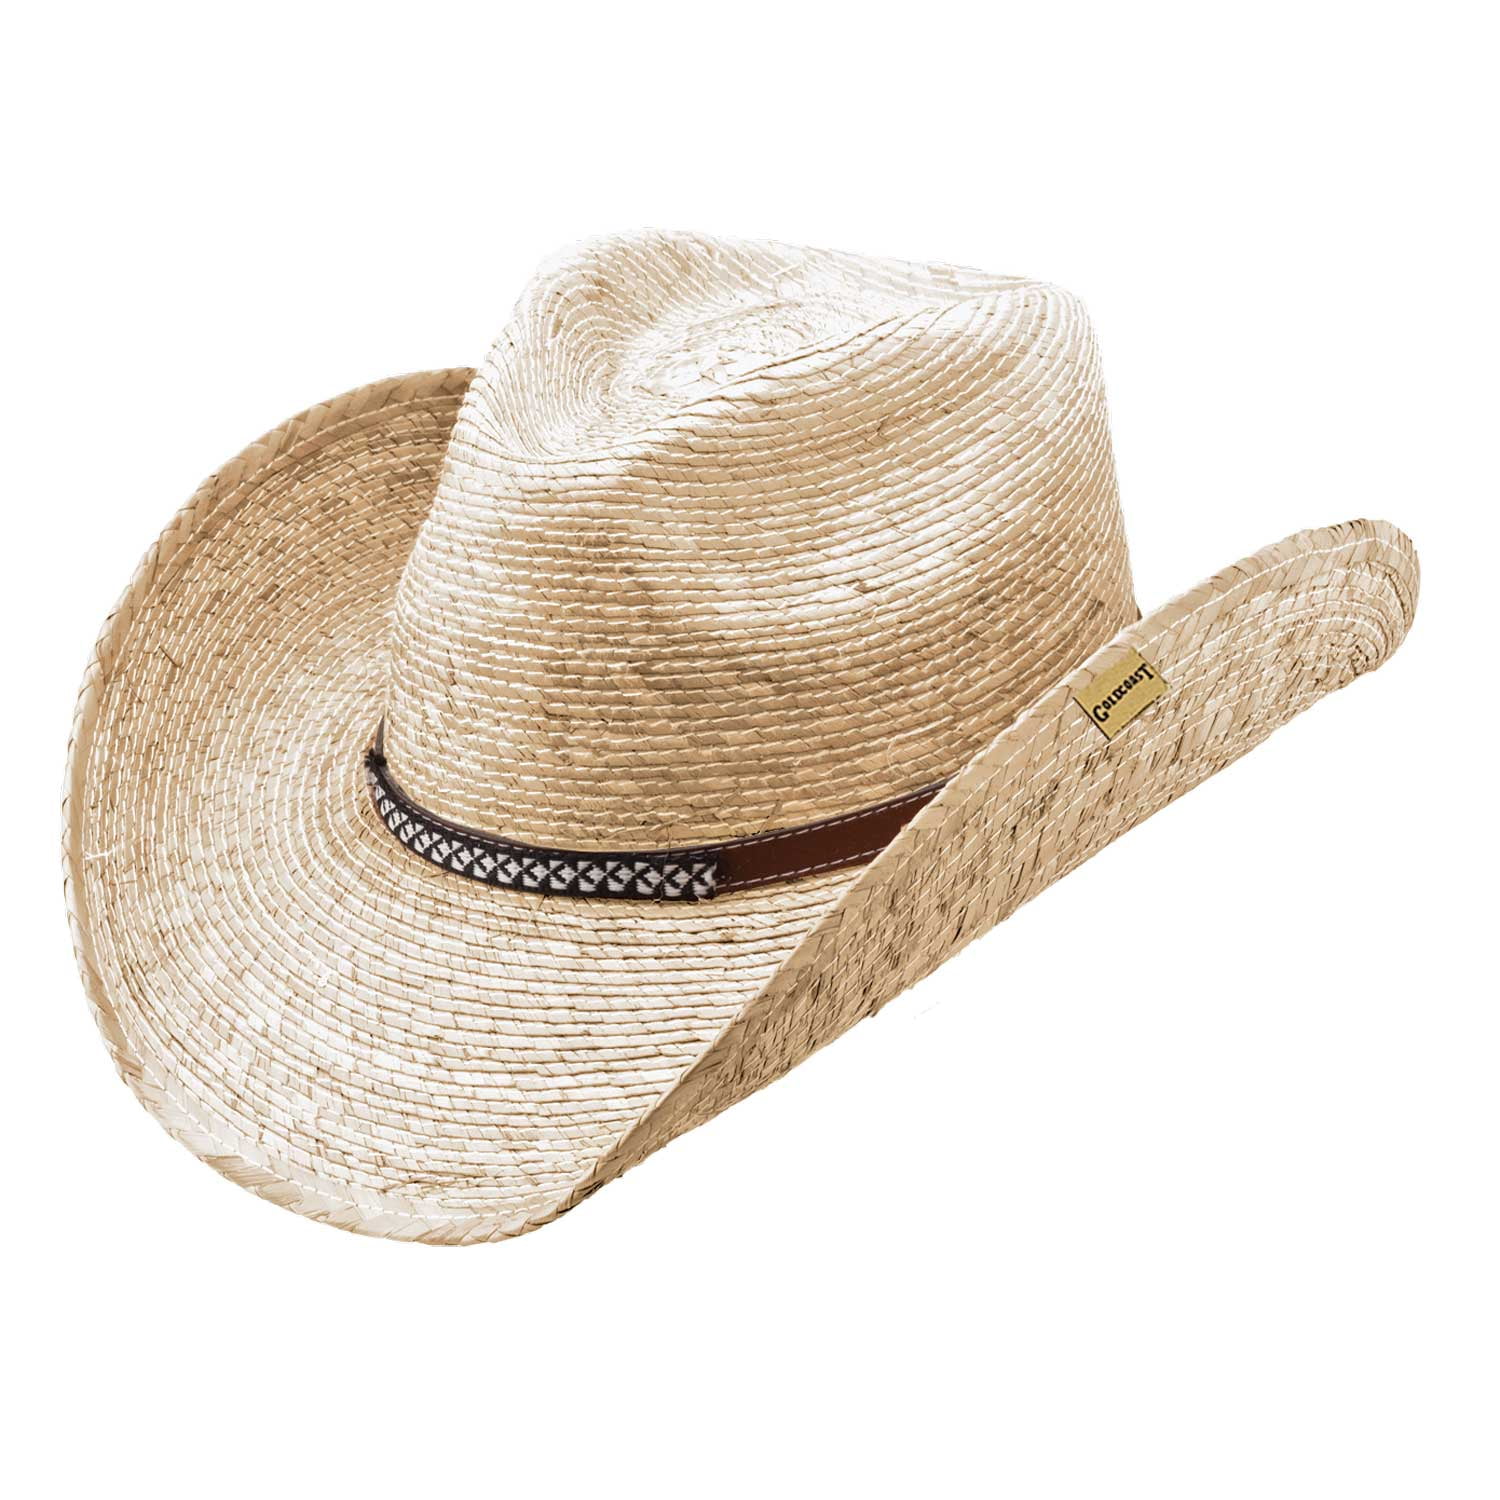 Goldcoast Braun Western Cowboy Straw Hat 